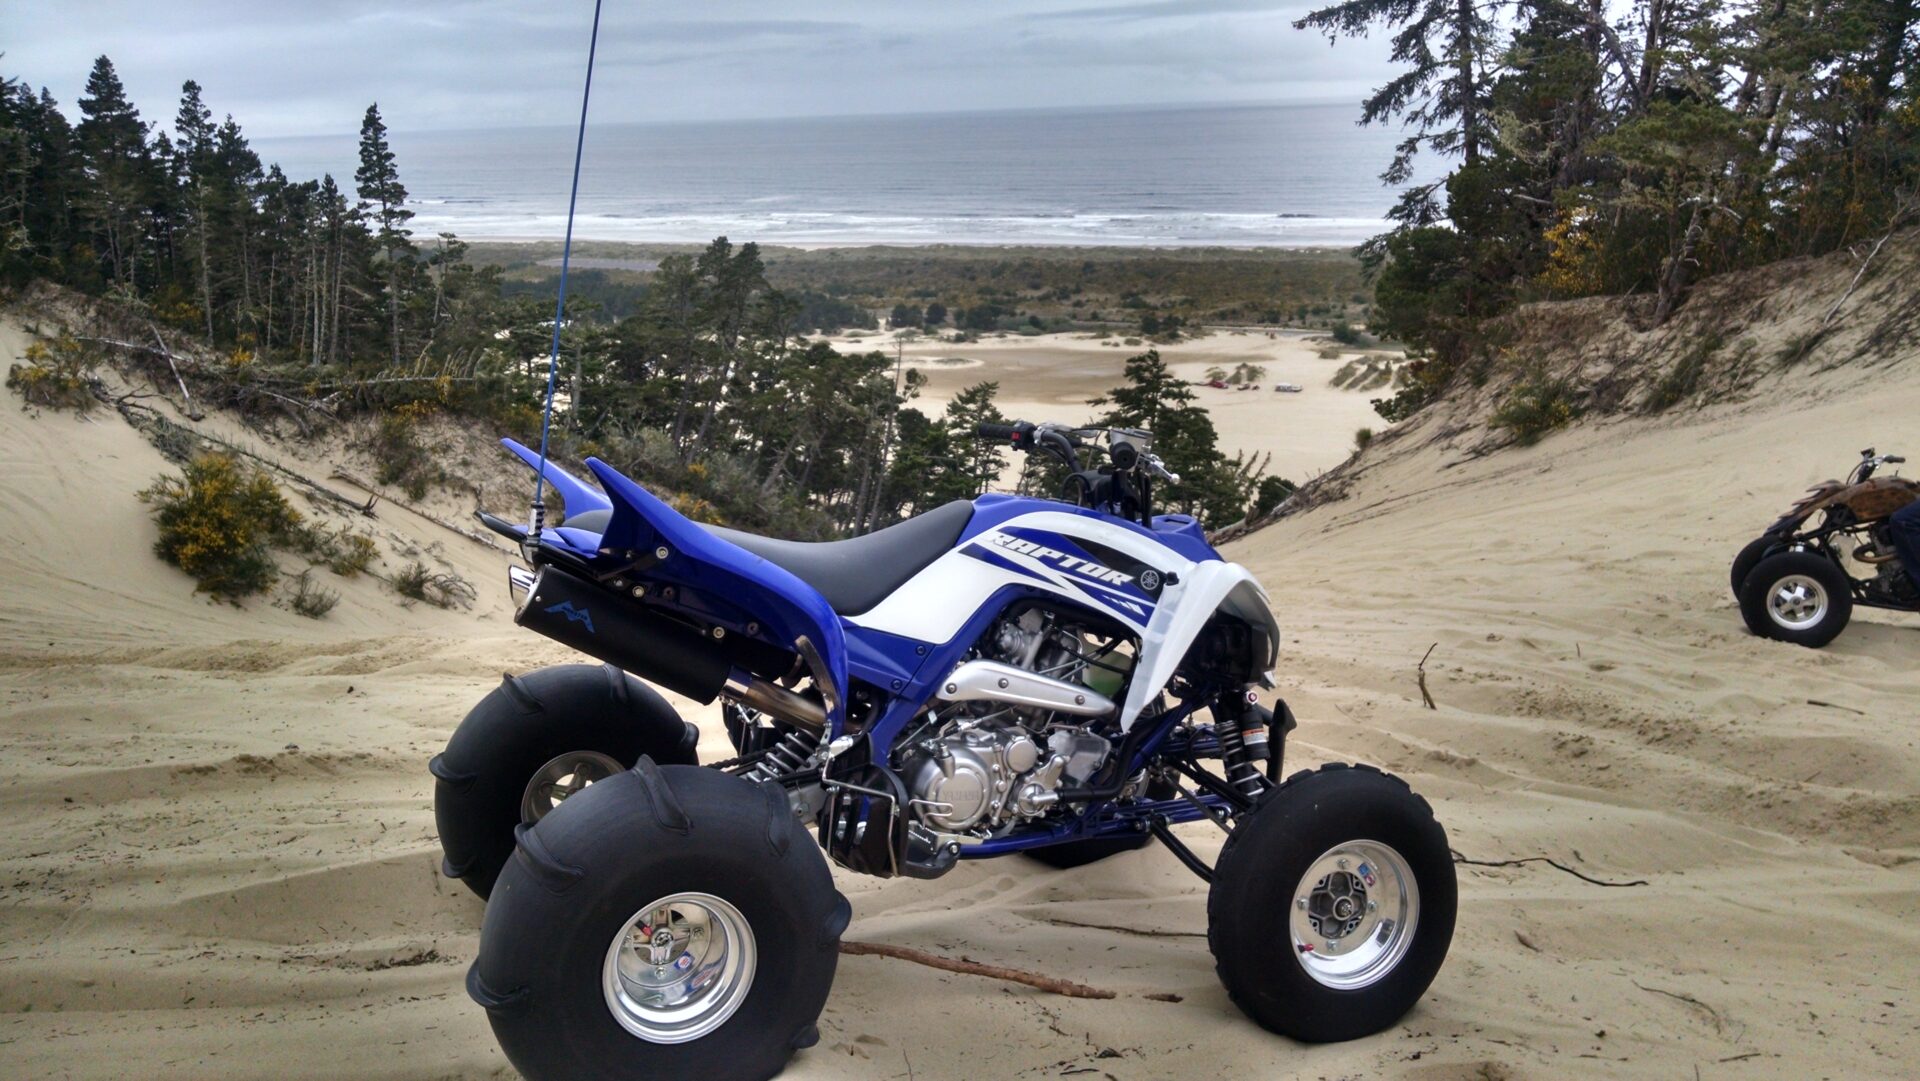 Suzuki ATV on a sand dune